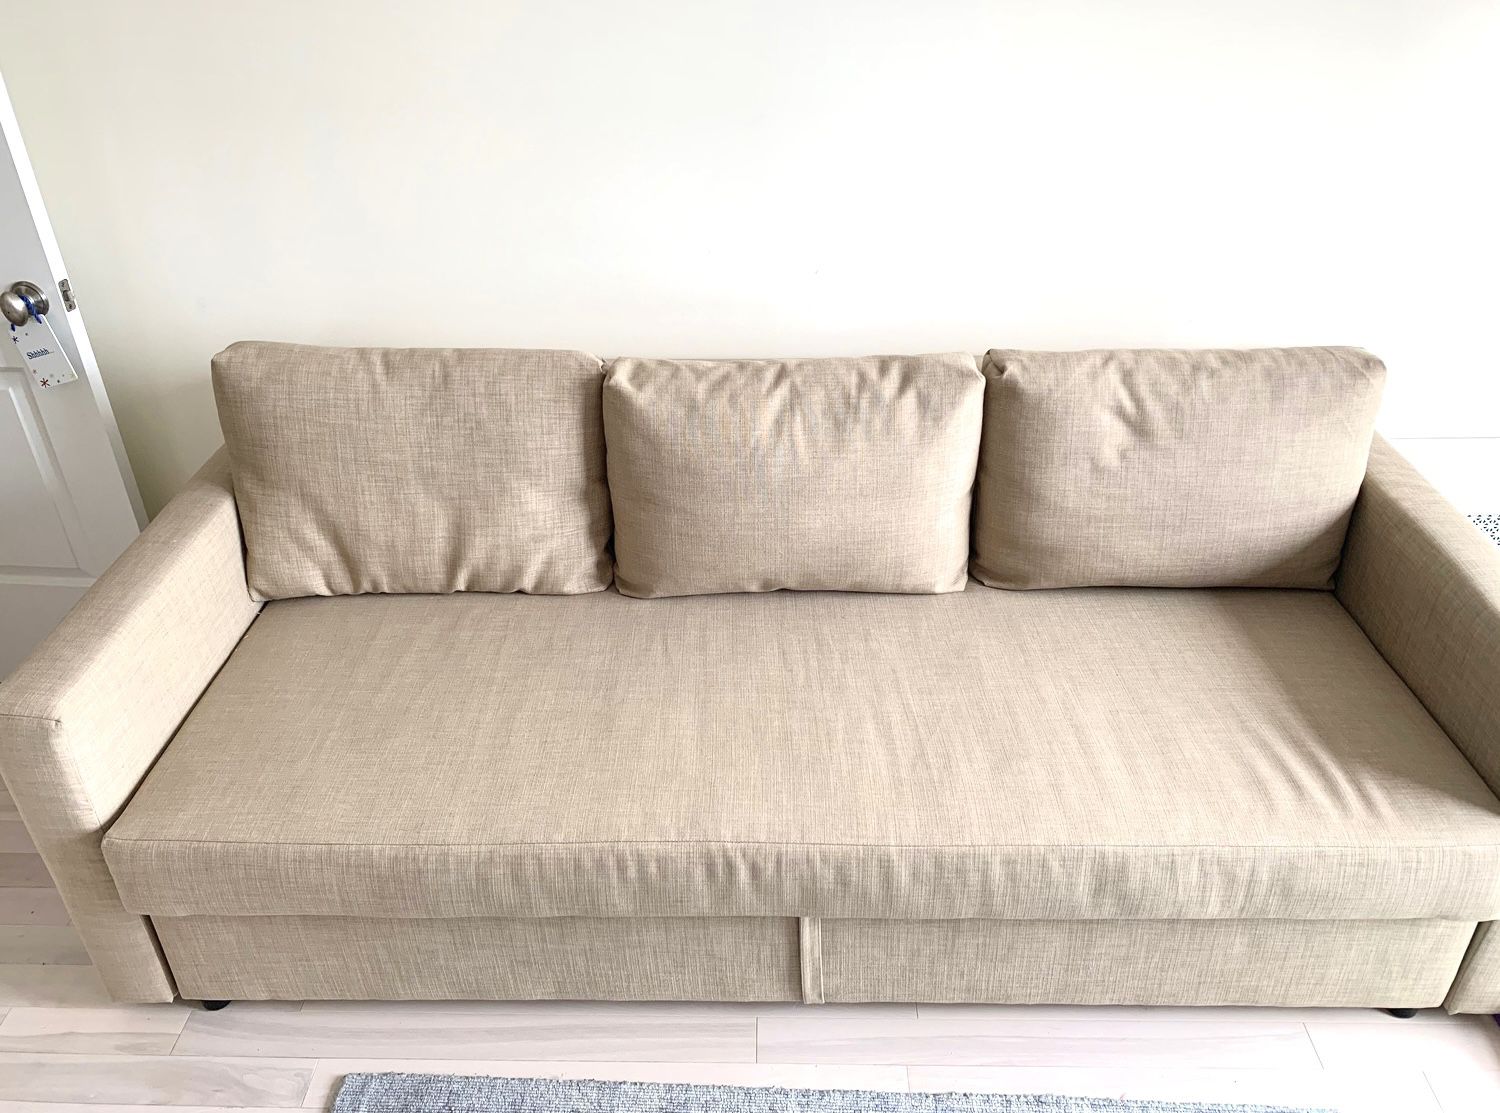 Ikea friheten sleeper sofa bed - Can Deliver